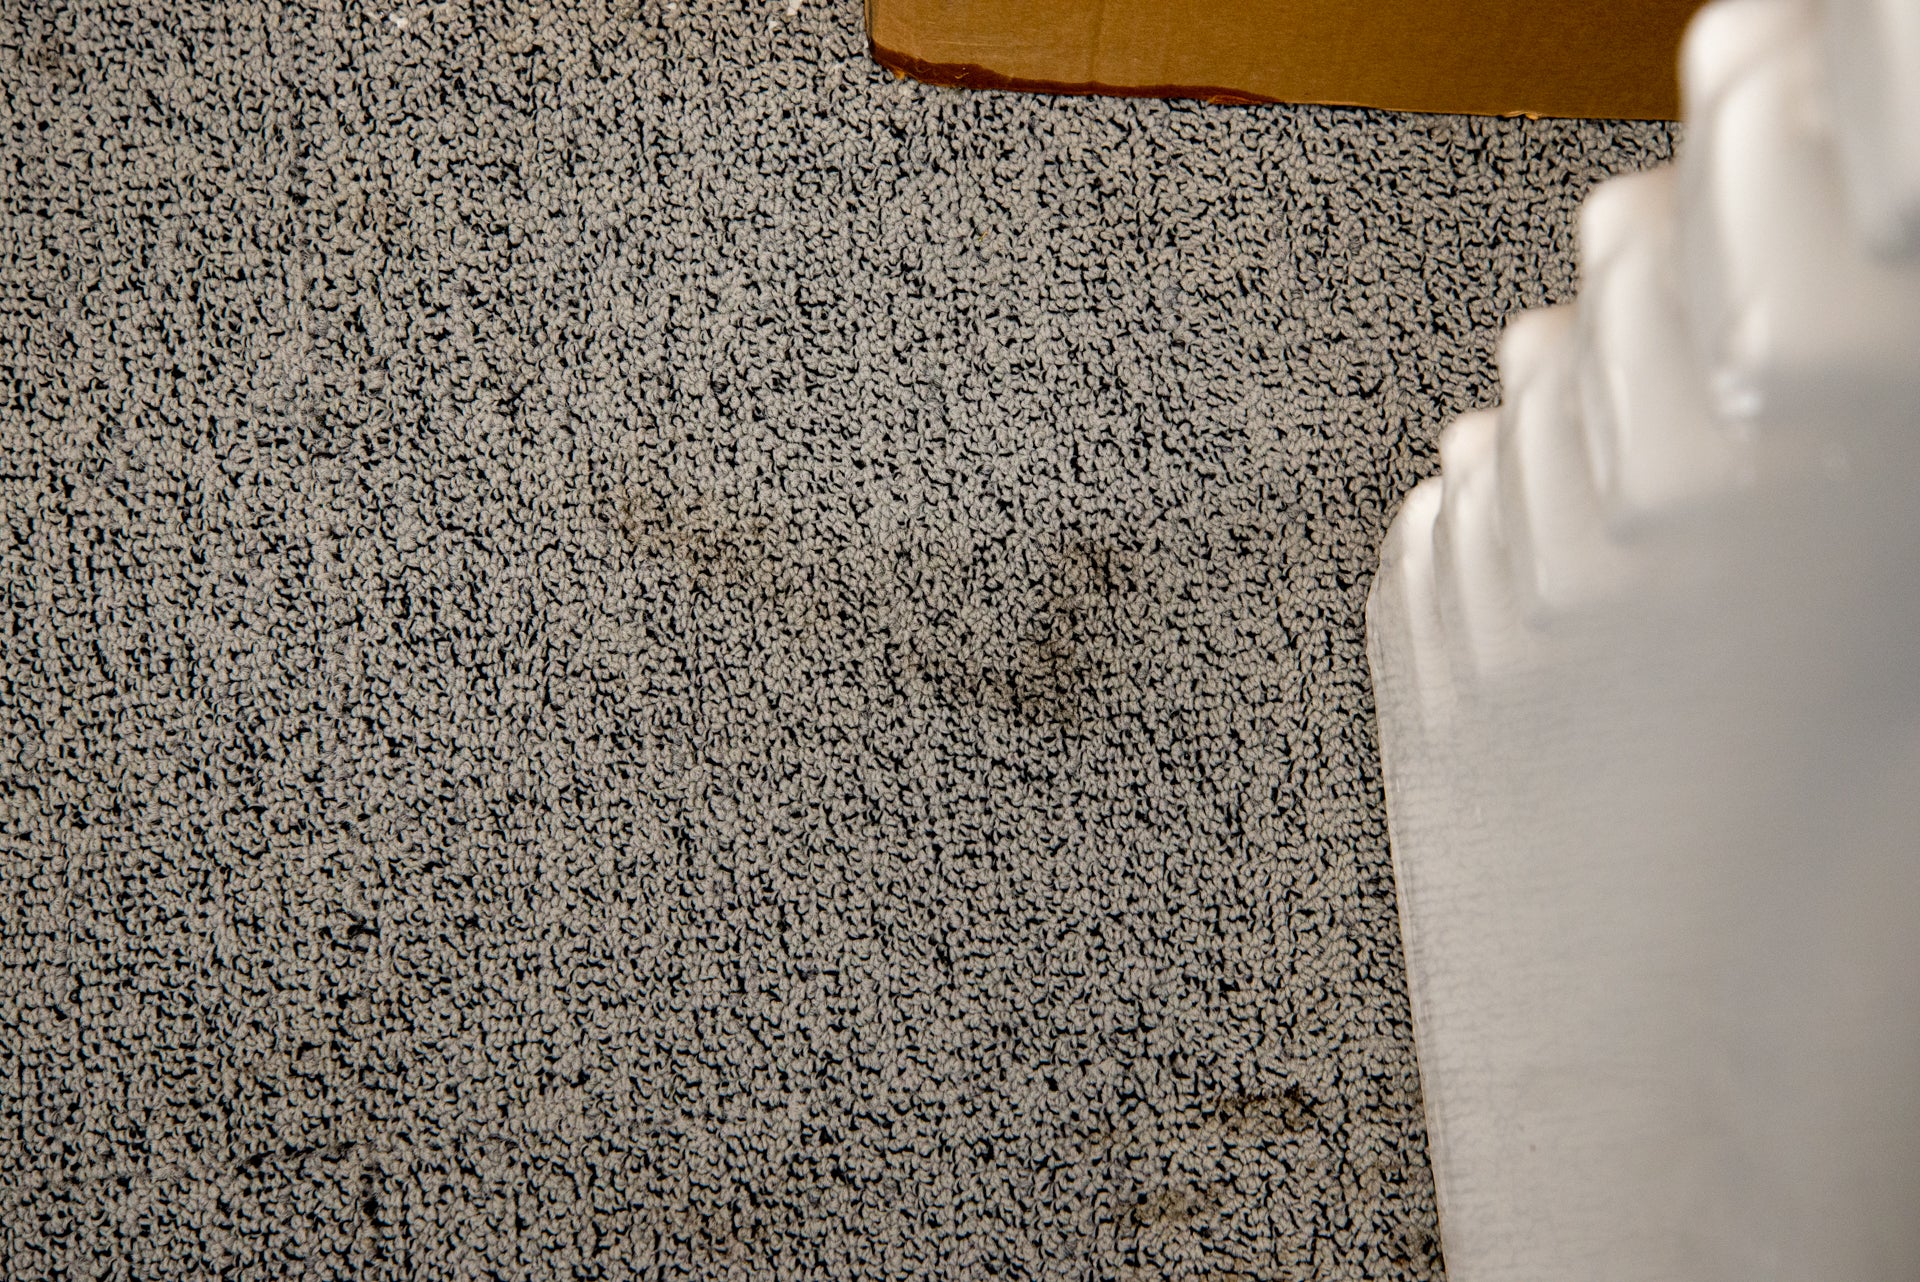 Vax Platinum SmartWash Carpet Cleaner mud close up